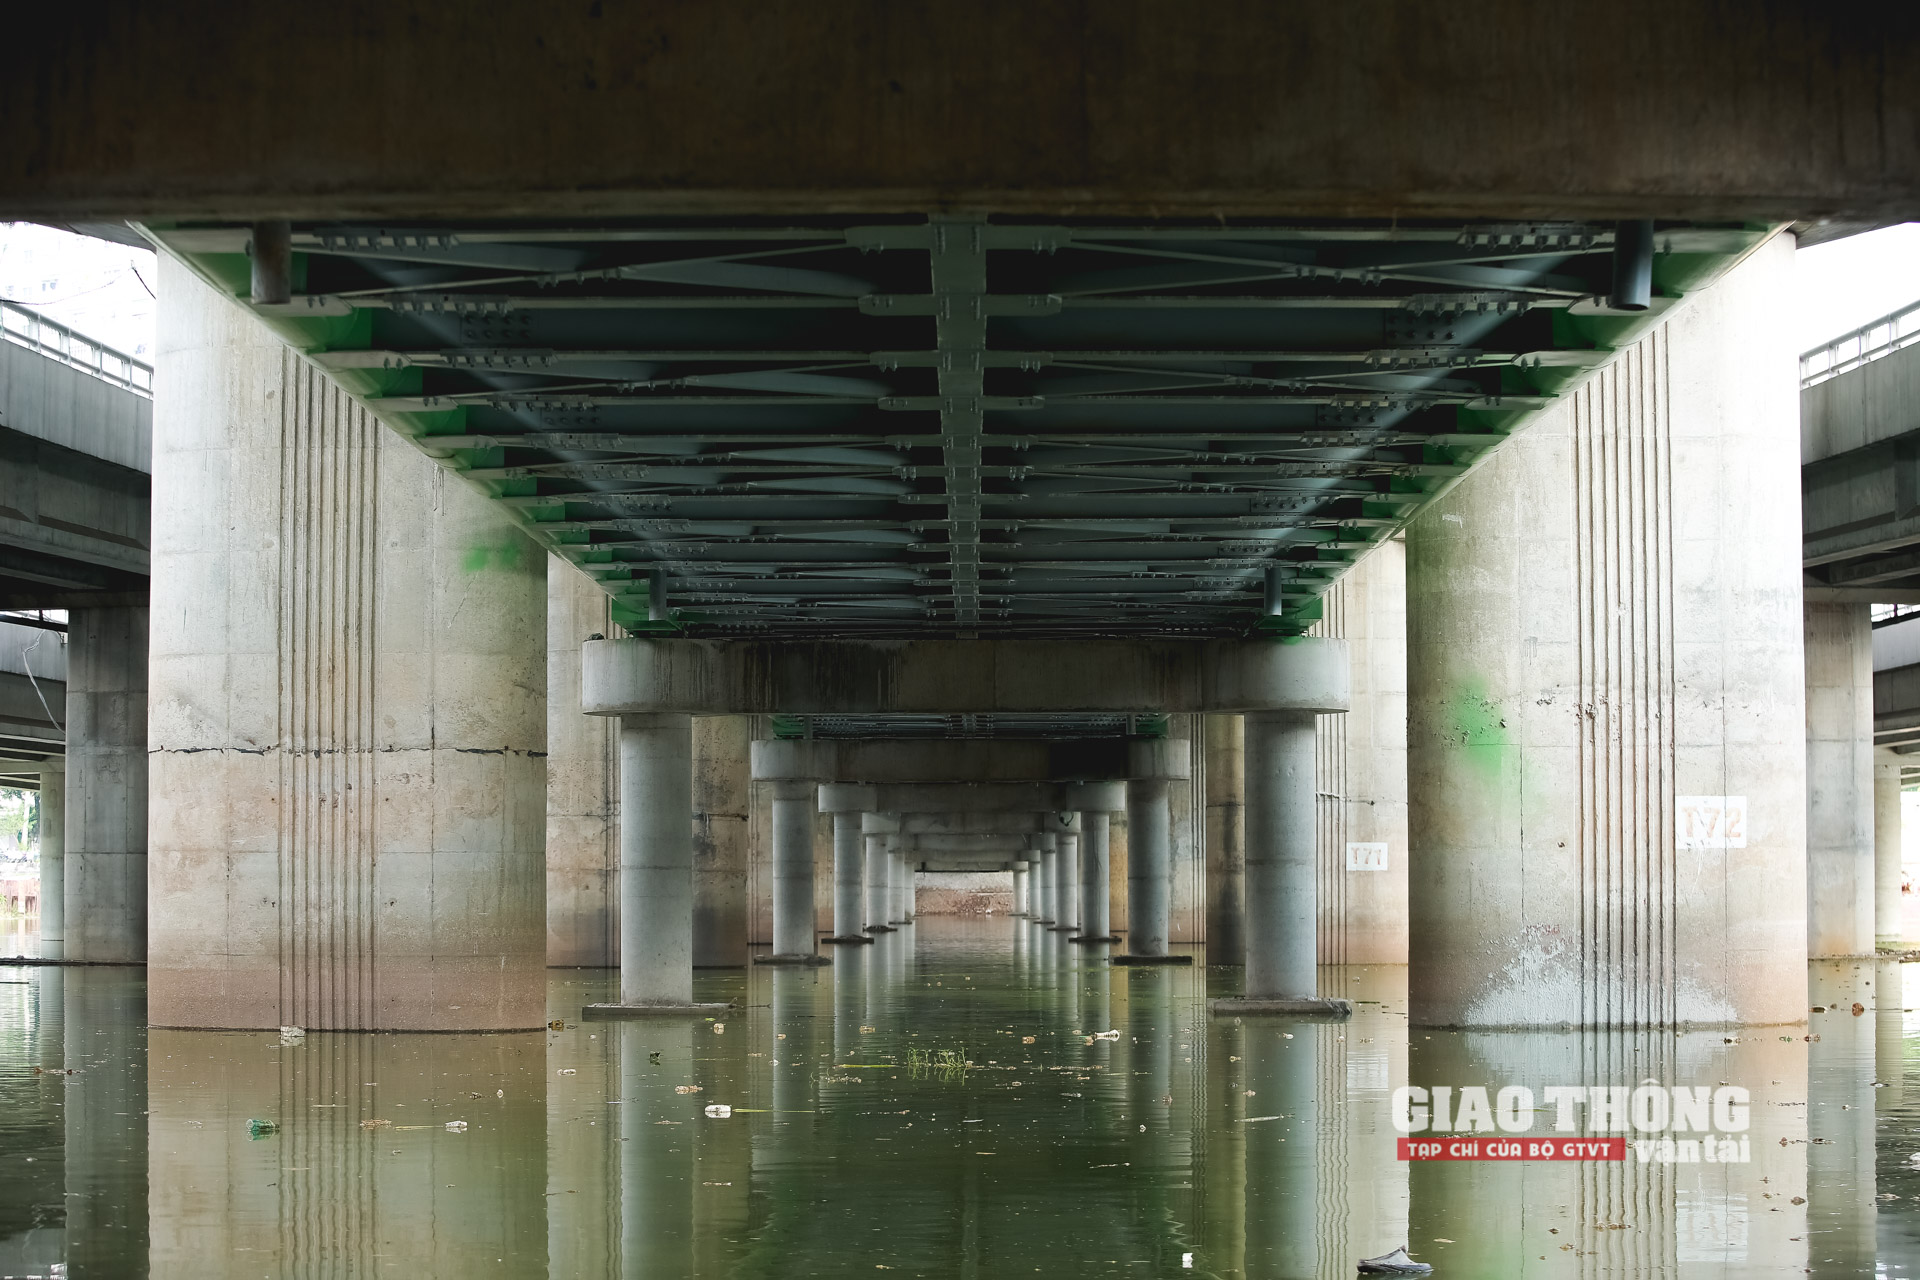 Cầu vòm thép vượt hồ Linh Đàm có dầm, lan can làm bằng sắt hai bên. Hệ thống chịu lực chính của cầu là 2 dàn thép được thiết kế cách điệu dạng hình vòm. Cầu có tổng chiều dài 297,2m mặt cắt ngang rộng 7,5m, bề rộng phần xe chạy là 6m